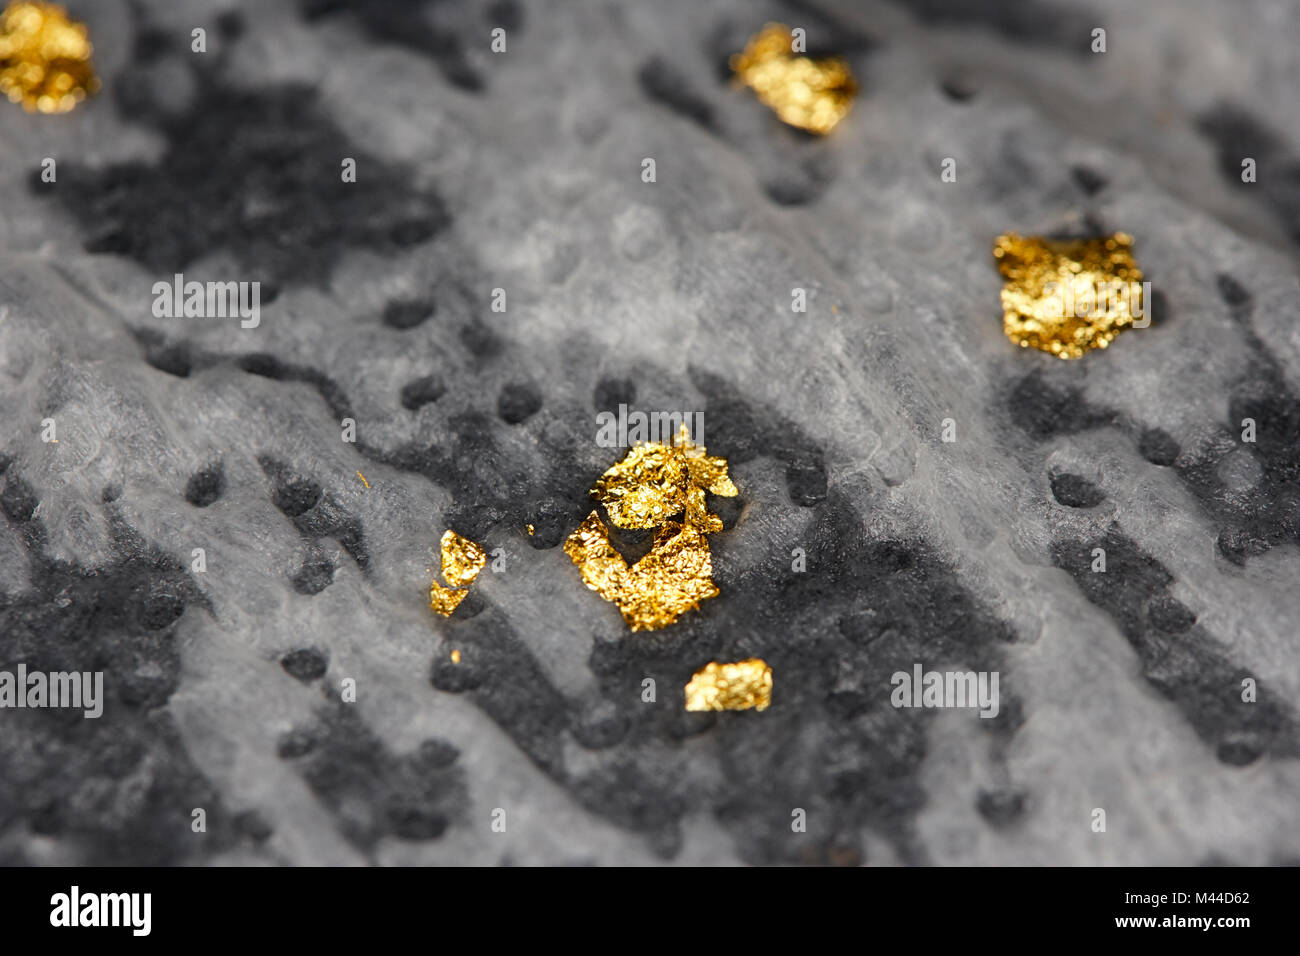 La récupération des flocons d'or à partir de composants électriques Banque D'Images